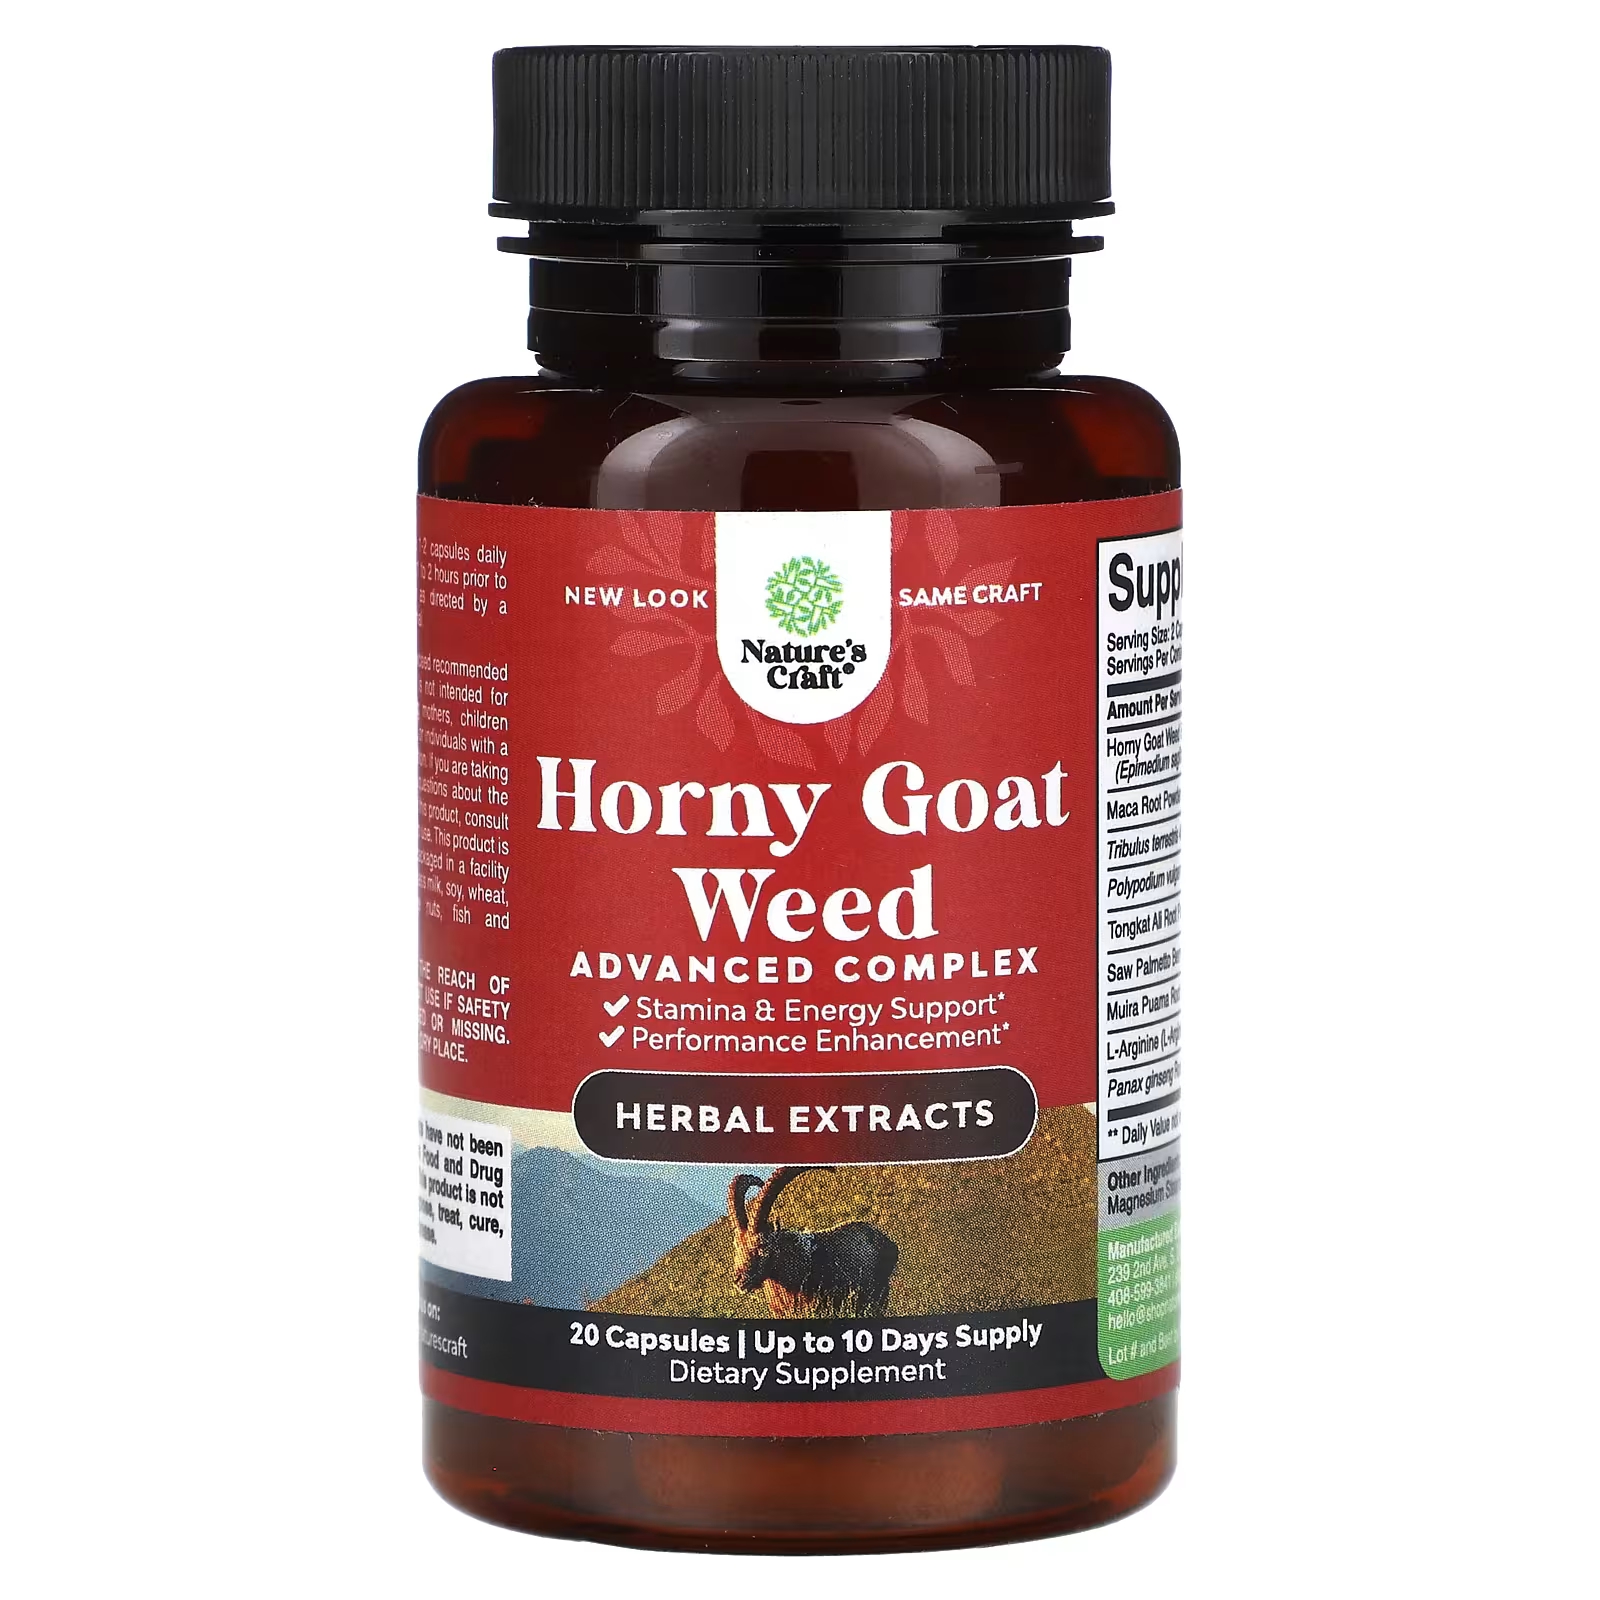 экстракт горянки 90 капсул бустер тестостерона икариин эпимедиум horny goat weed protein company Расширенный комплекс Nature's Craft Horny Goat Weed, 20 капсул